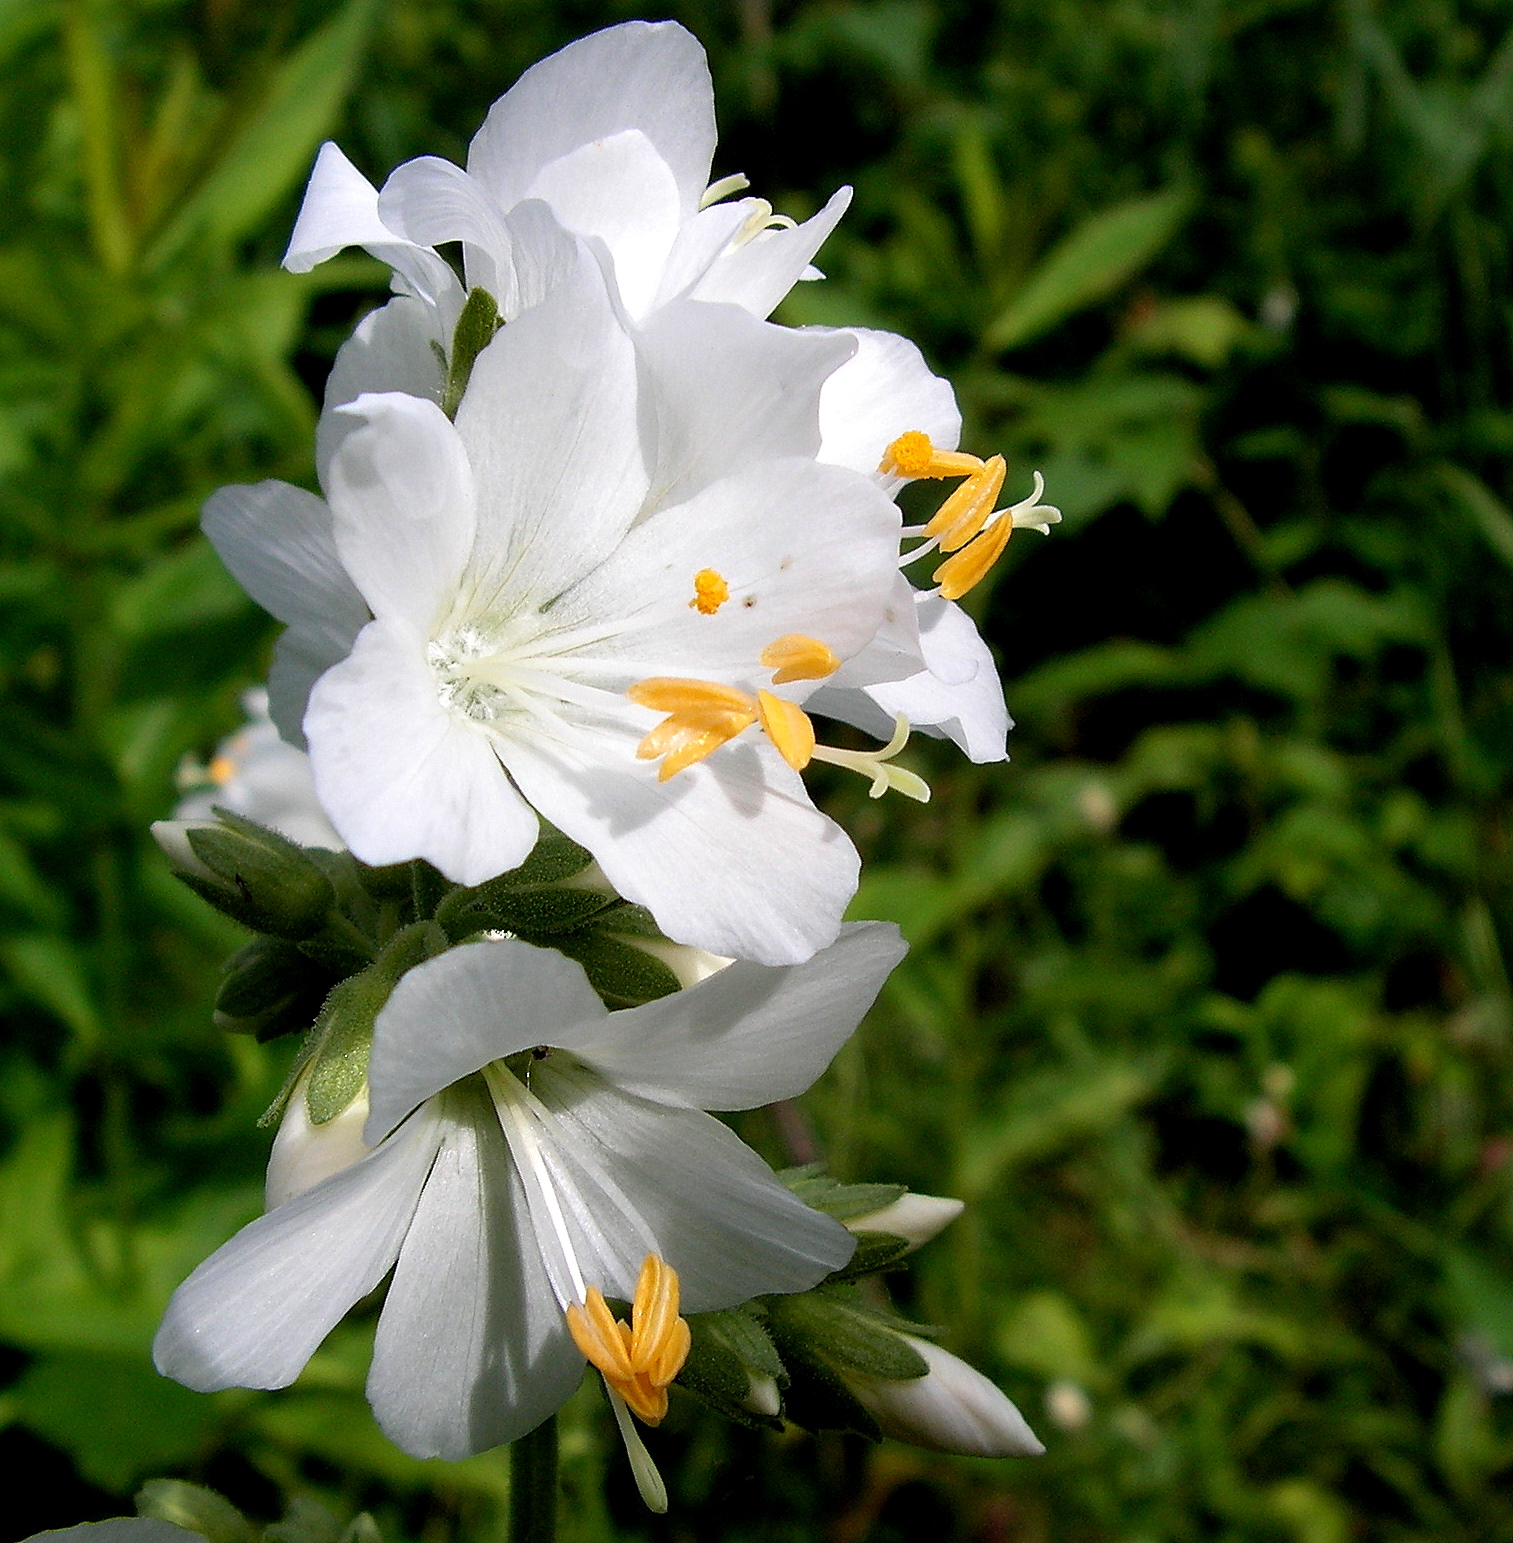 Pretty White Flower by JocelyneR on DeviantArt